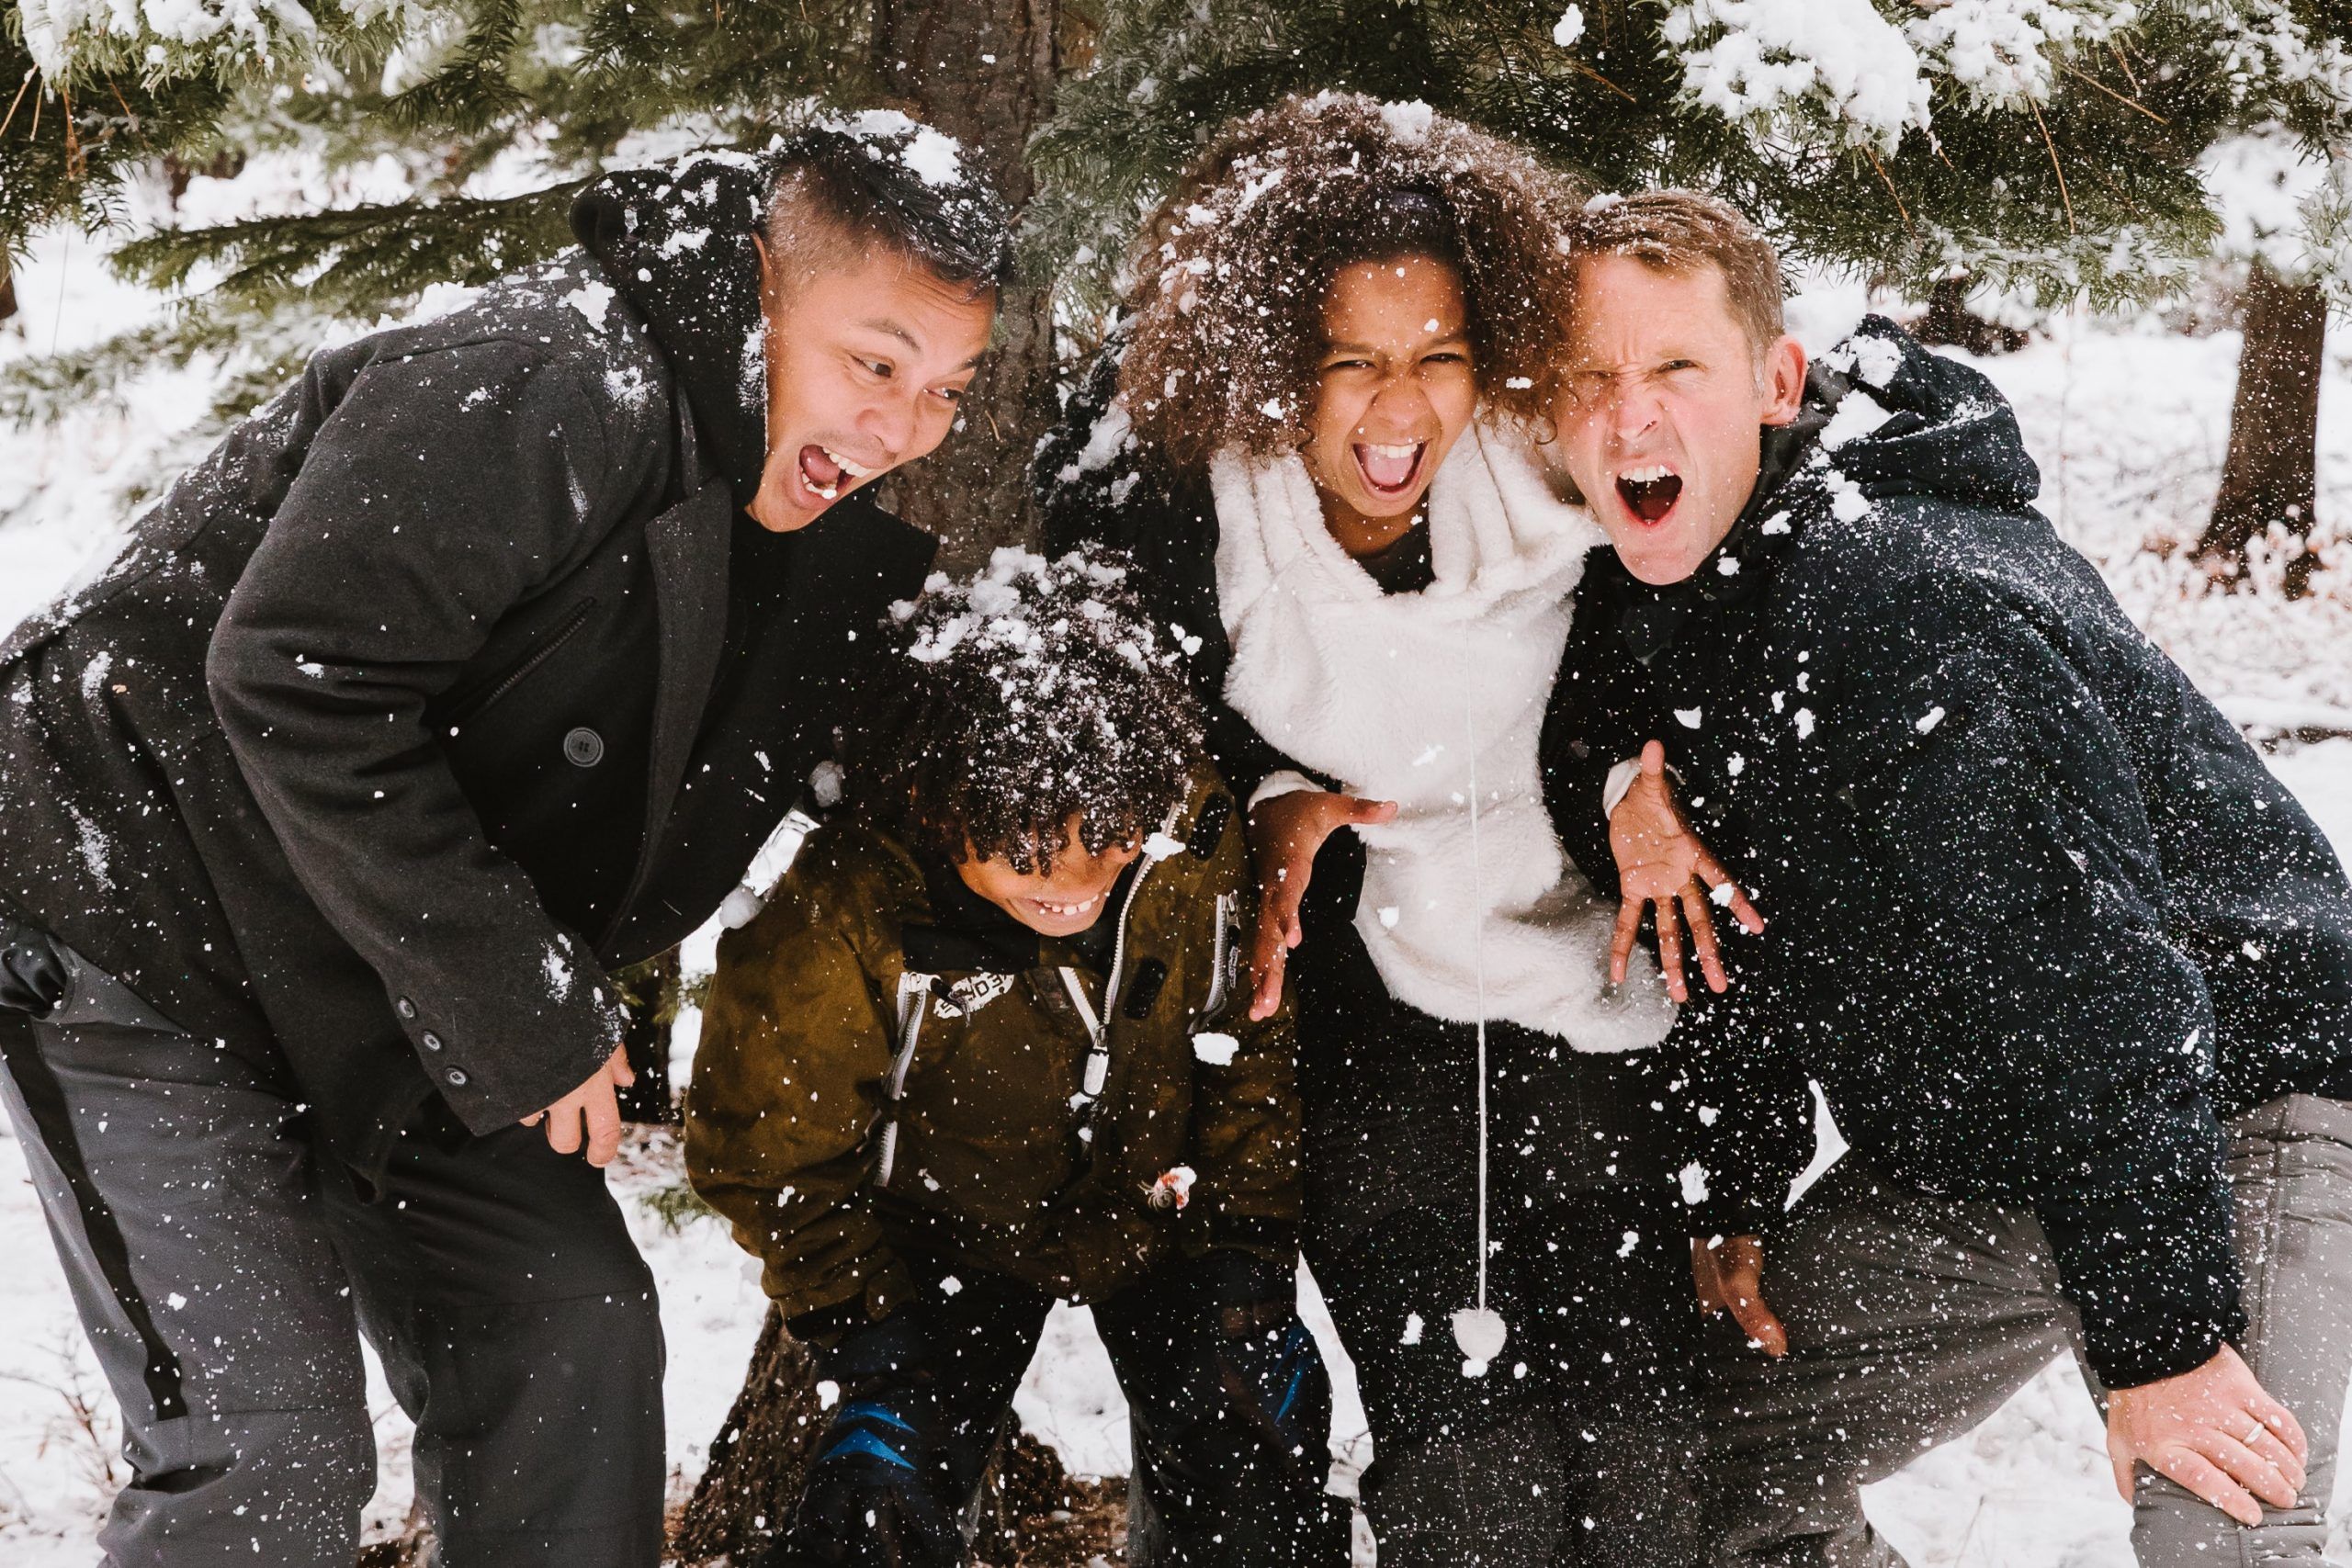 Menschen im Schnee, freudige Gesichter, Gefühl von Gemeinschaft und Spaß